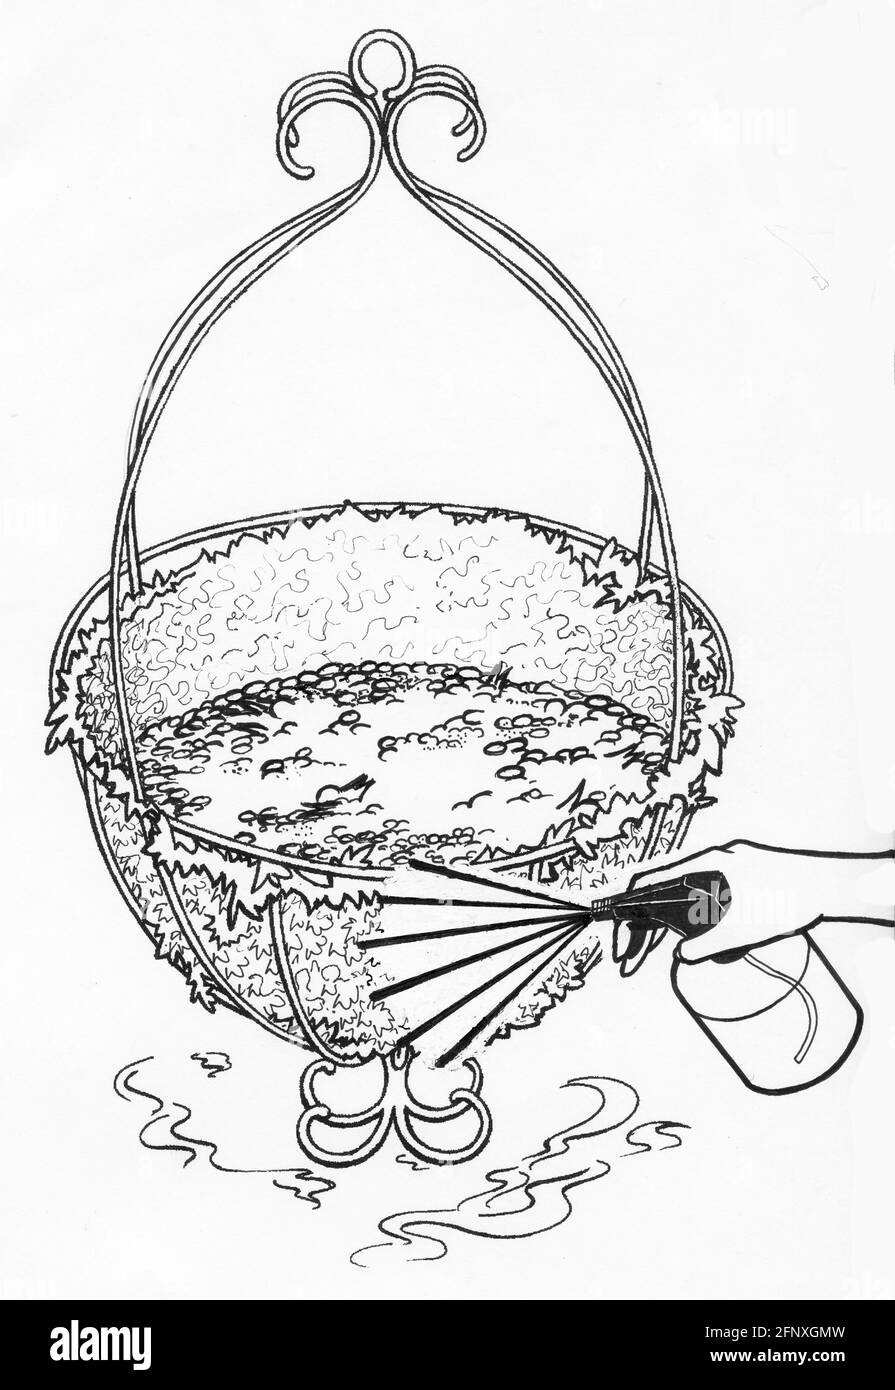 Disegno di una persona che spruzza una piantatrice e muschio liner con acqua Foto Stock